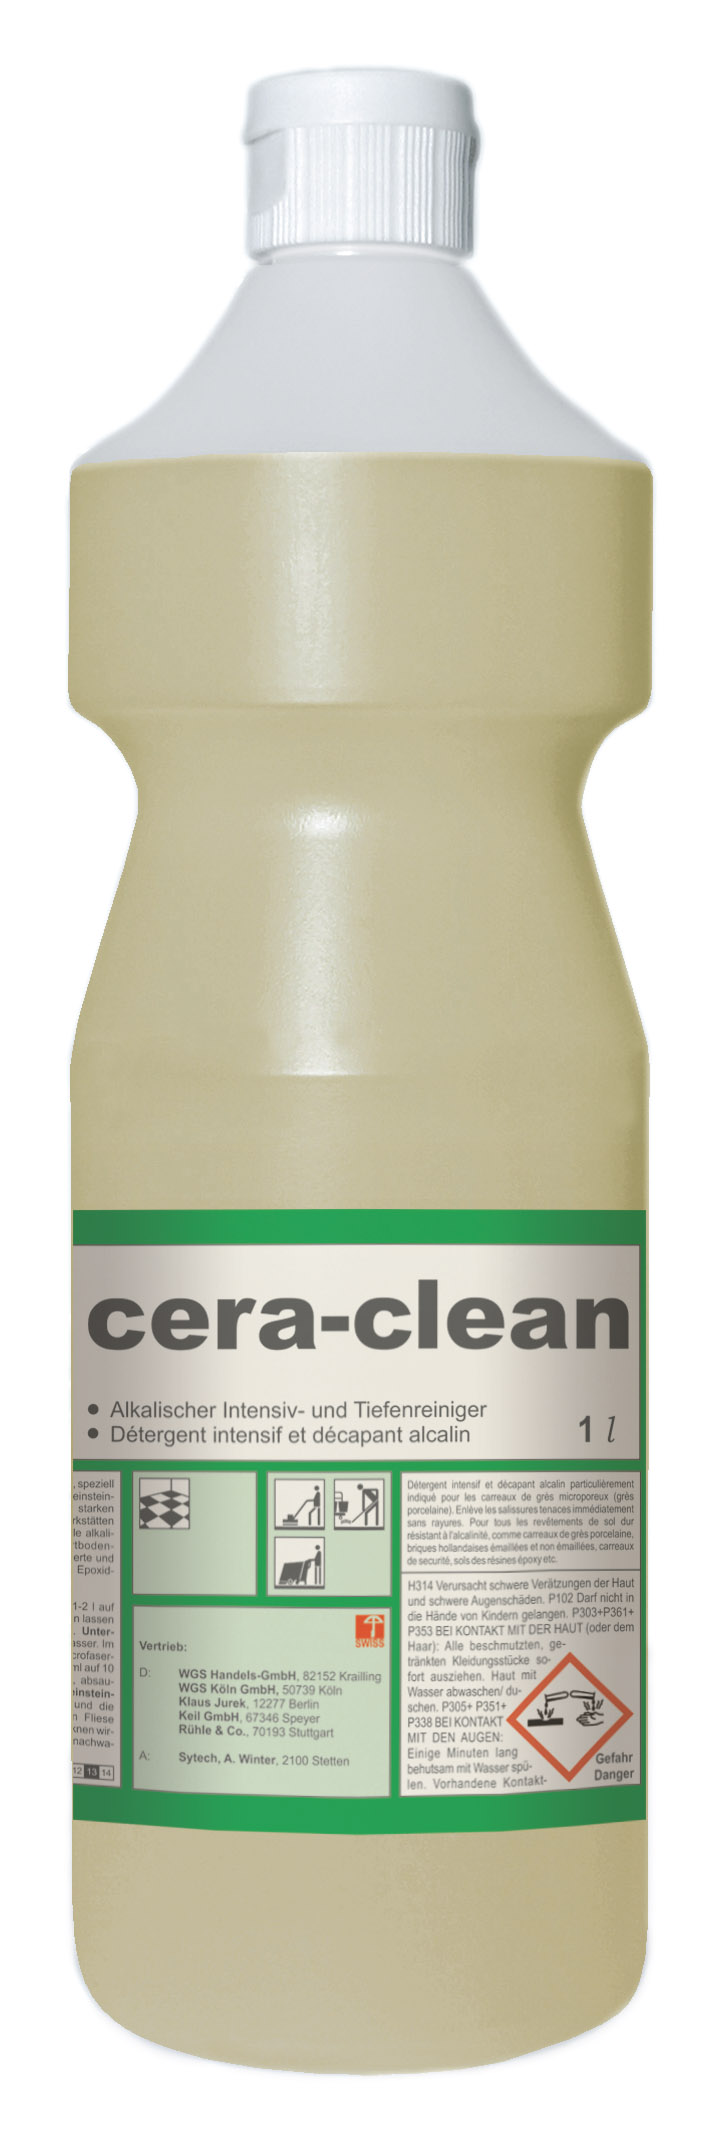 Pramol cera-clean Feinsteinzeugreiniger, 1 Flasche, 1 Liter